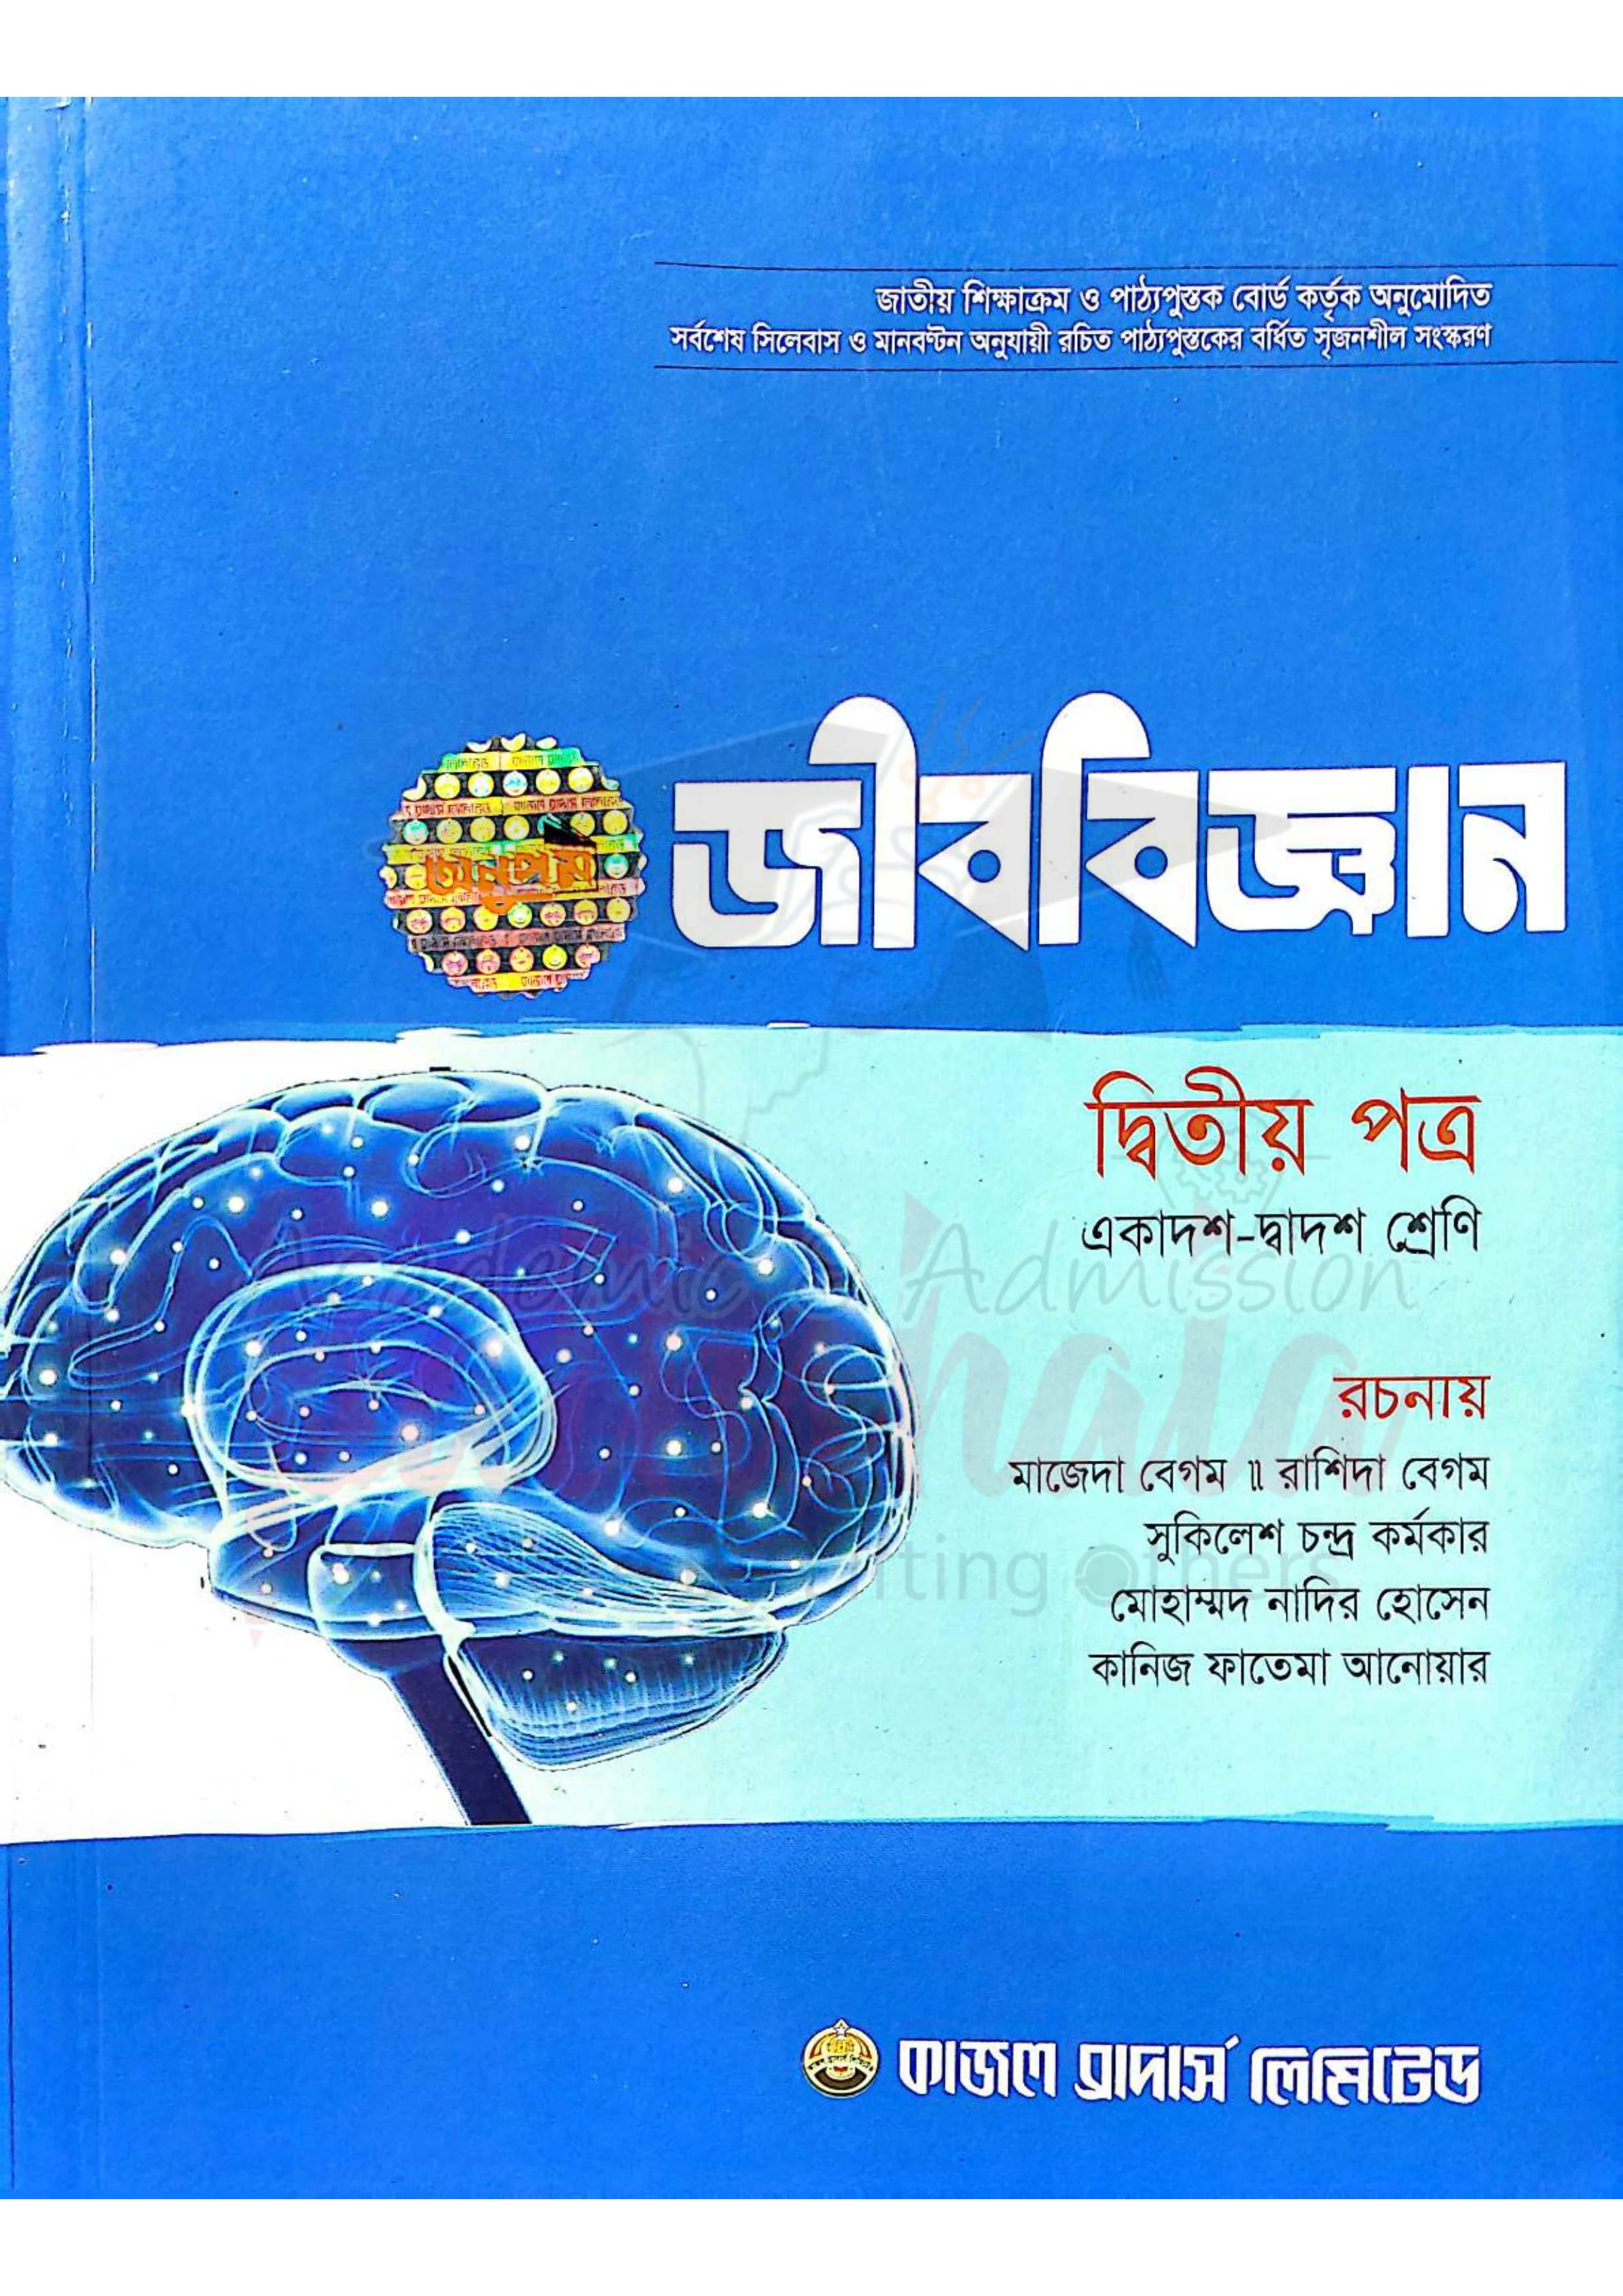 জীববিজ্ঞান ২য় পত্র মাজেদা বেগম pdf | Biology 2nd Paper Majeda Begum 2023 PDF | Kajol brothers biology 2nd paper book pdf